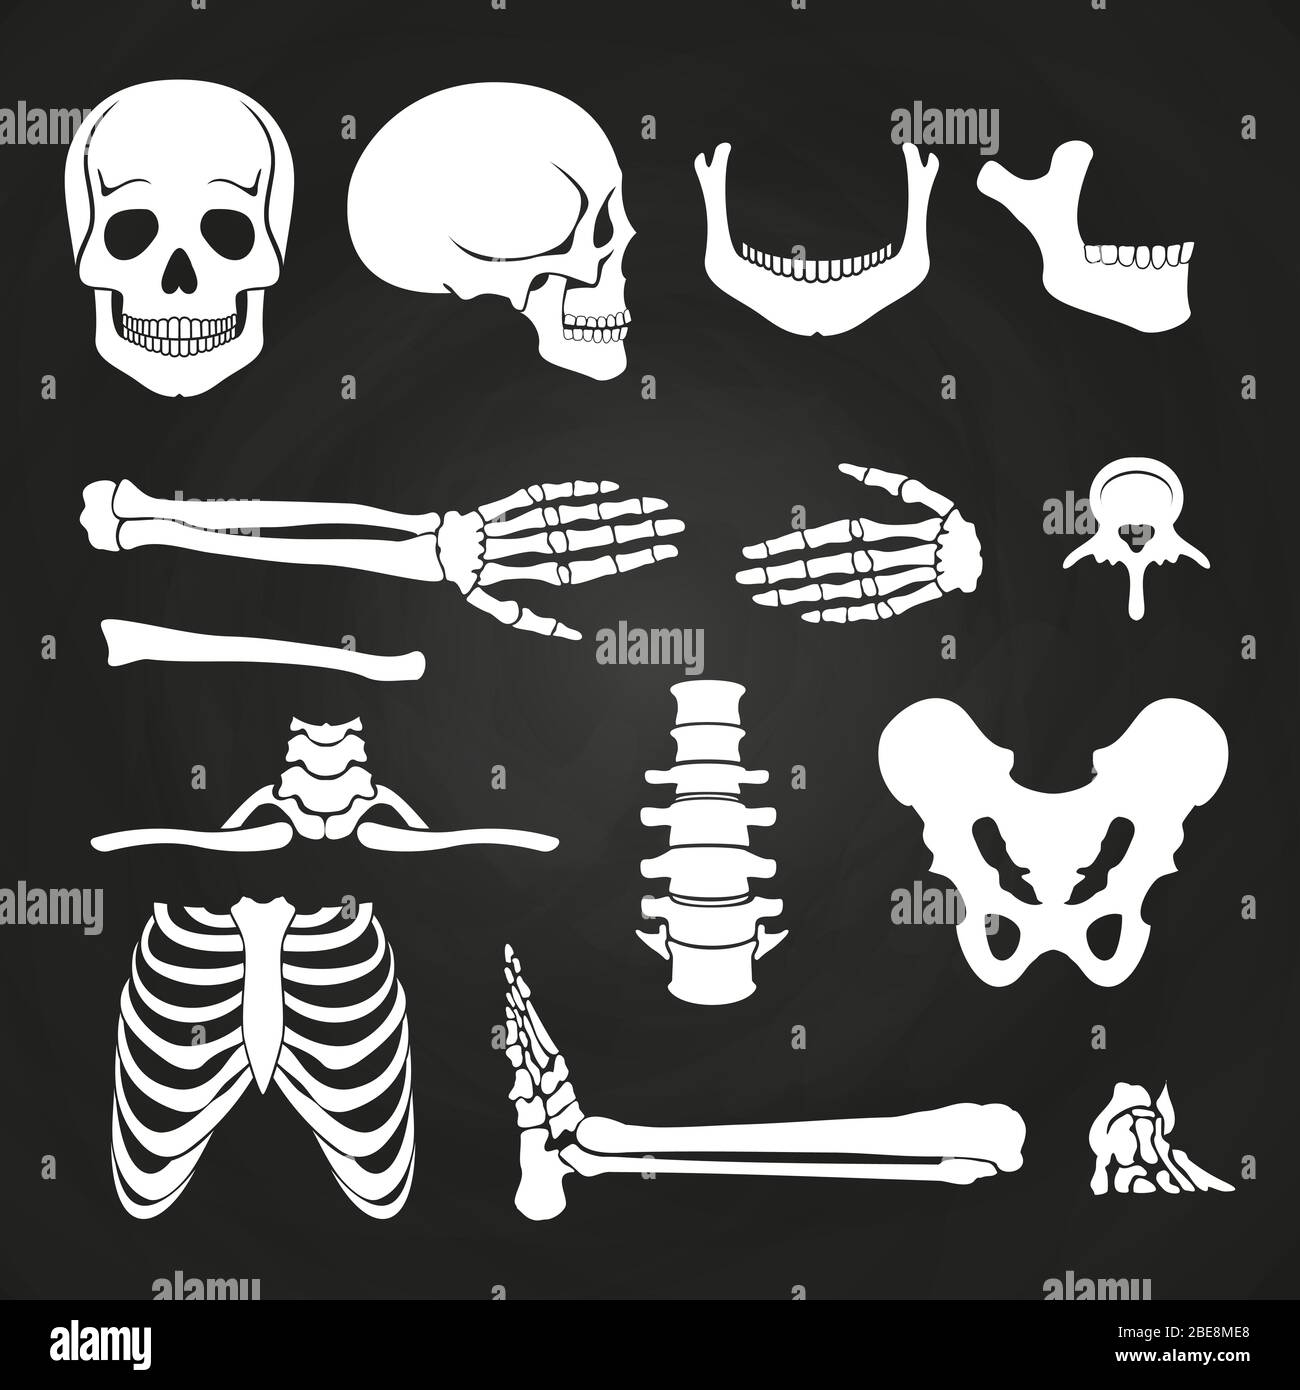 Sammlung menschlicher Knochen auf Tafel. Skelett menschliche Anatomie, Rückgrat und Handknochen. Vektorgrafik Stock Vektor